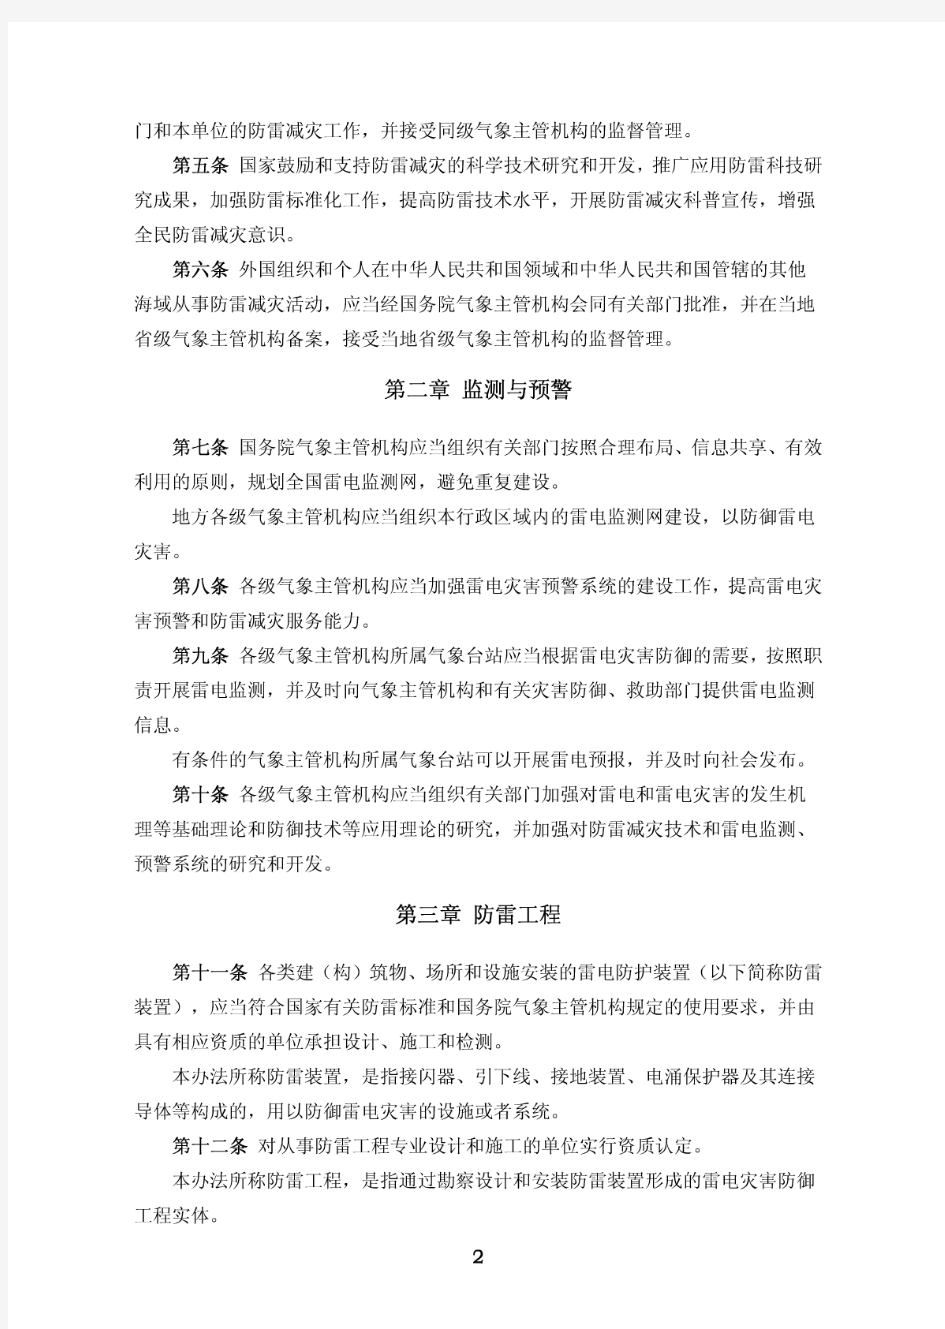 中国气象局第20号令《防雷减灾管理办法》